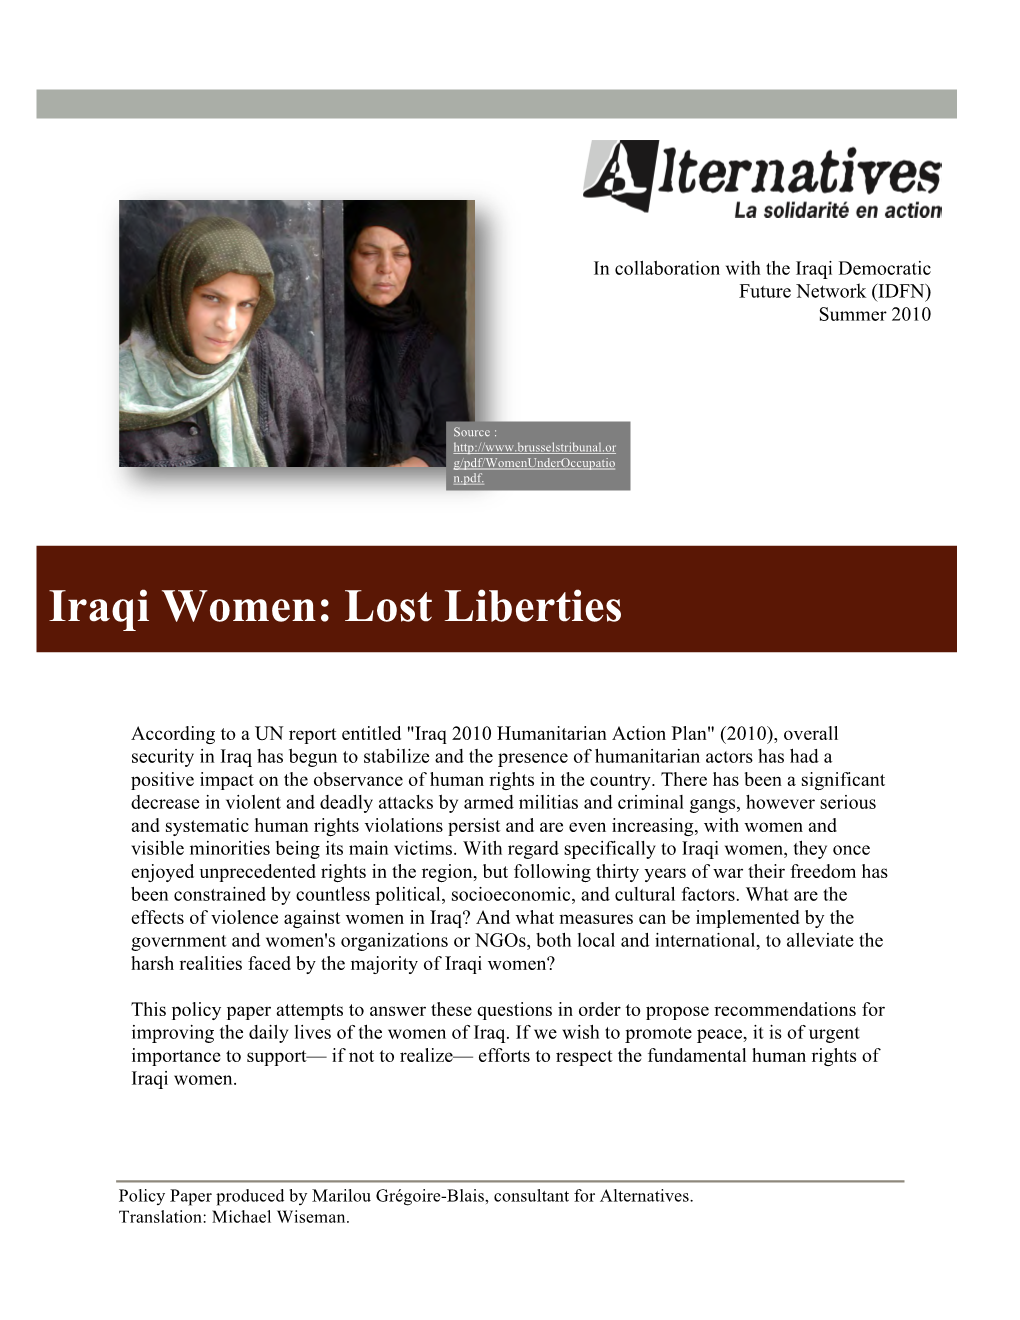 Iraqi Women: Lost Liberties